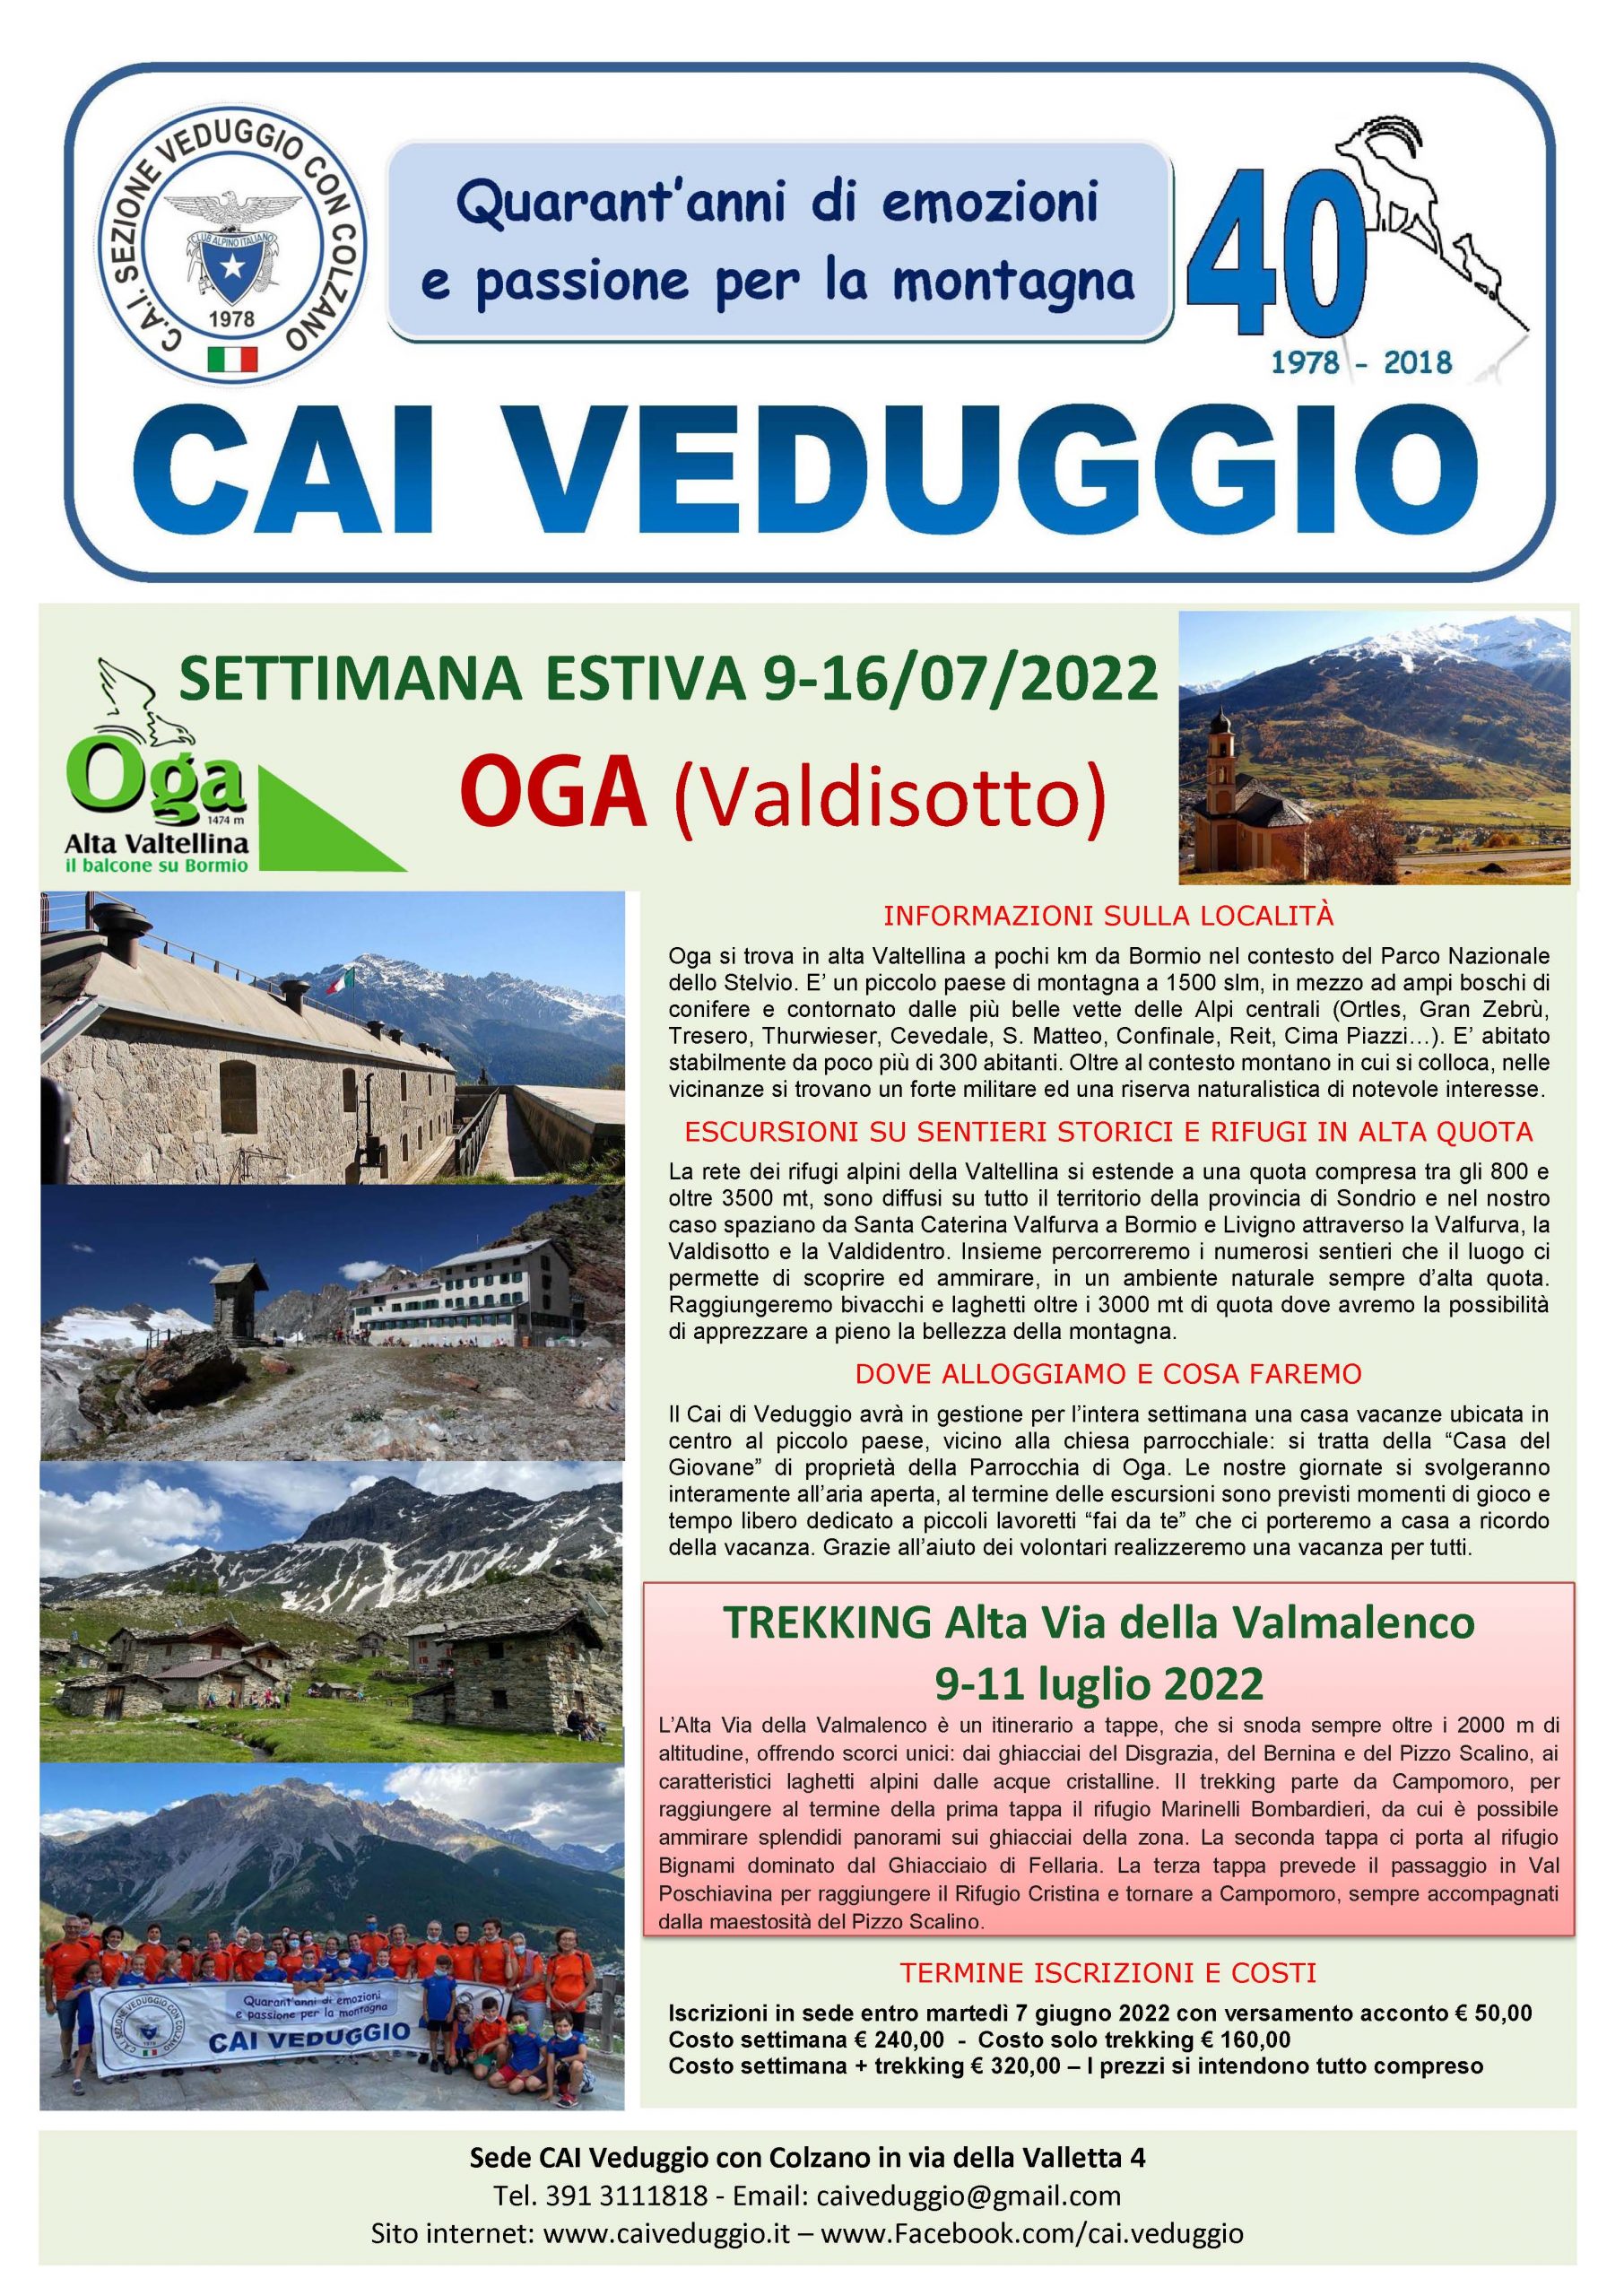 Settimana estiva di Alpinismo Giovanile Oga(Alta Valtellina) – Trekking Alta Via della Valmalenco